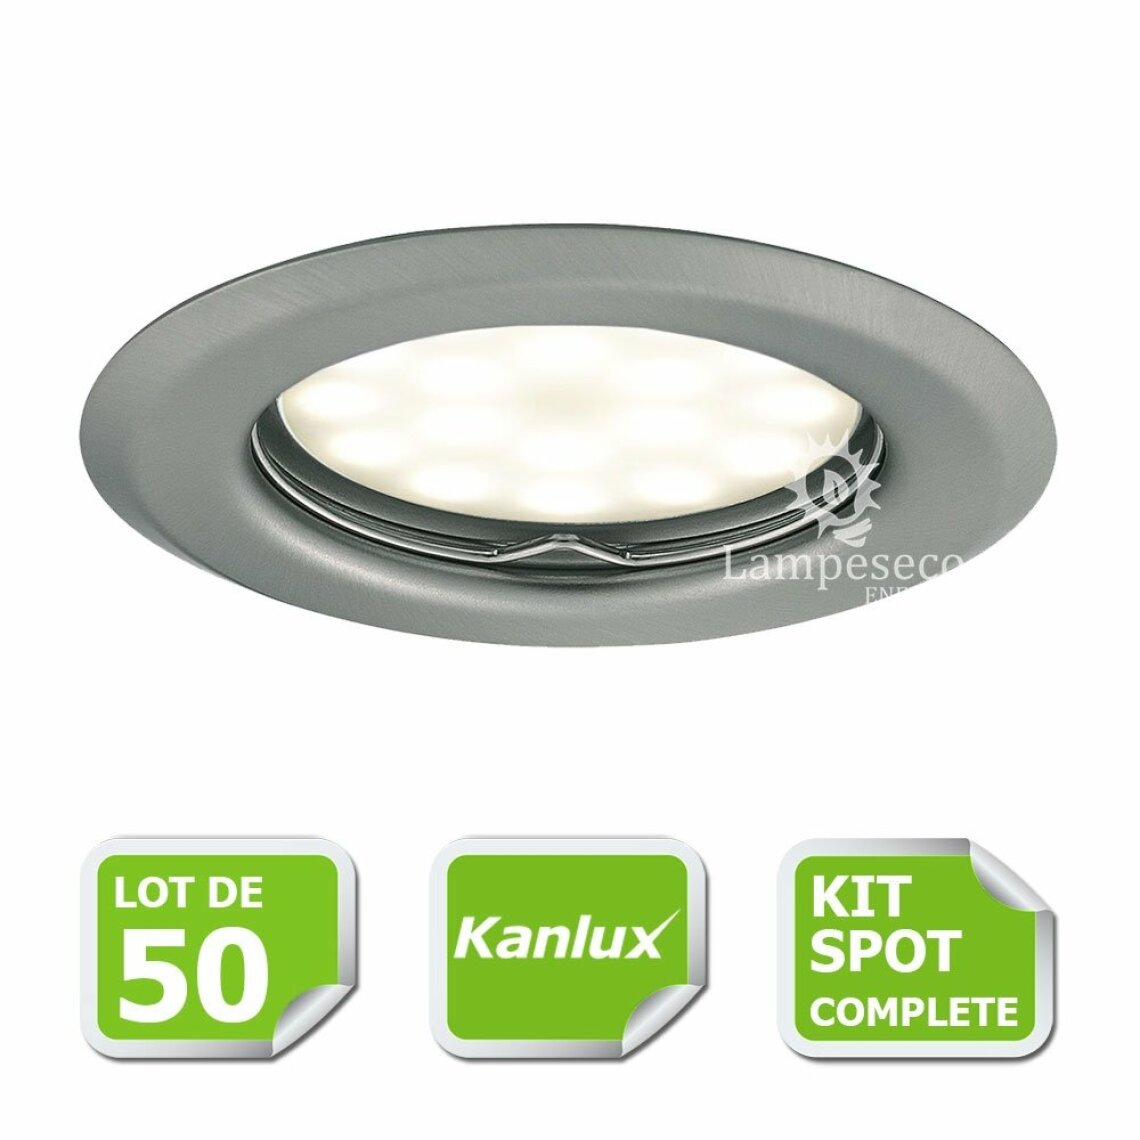 Kanlux - Kit complete de 50 Spots encastrable chrome mat marque Kanlux avec GU10 LED 5W Blanc Chaud - Boîtes d'encastrement